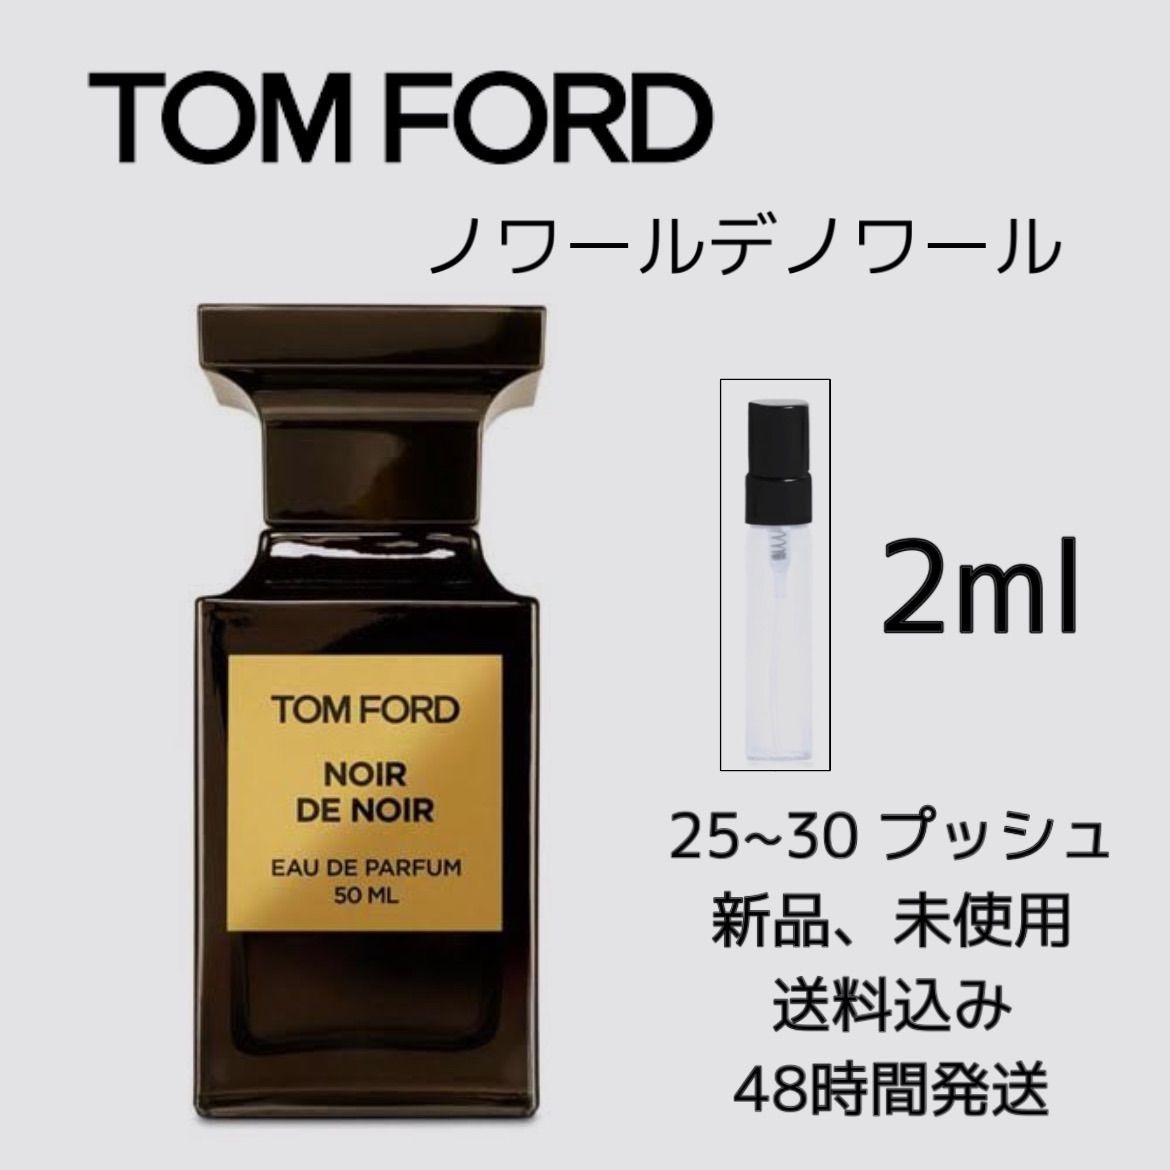 大特価新品10月限定価格トムフォード ノワールデノワール 100ml 新品未使用 香水(ユニセックス)